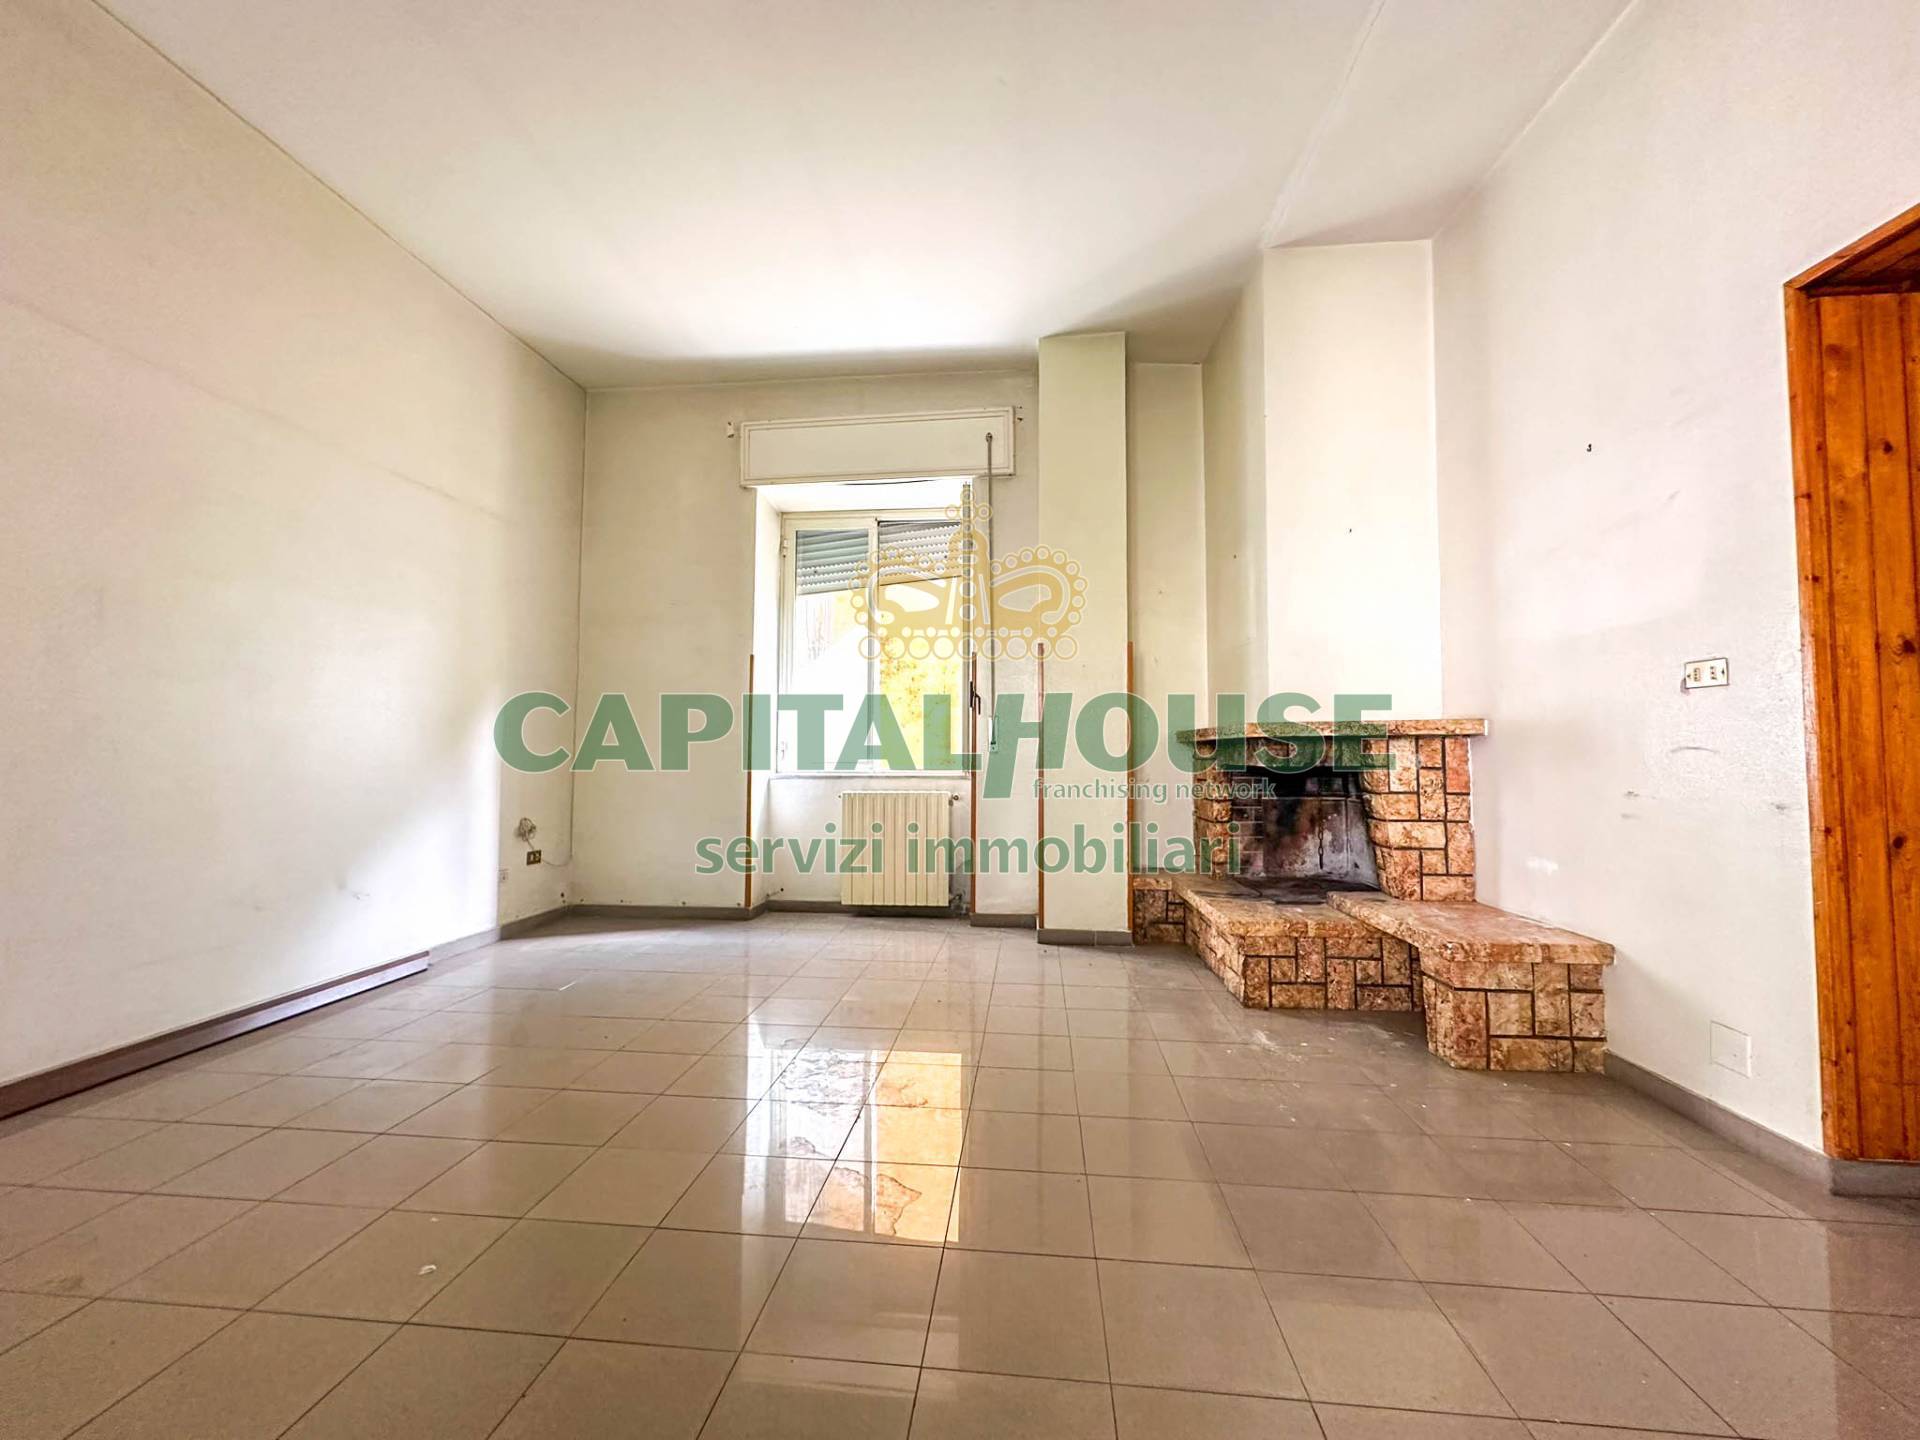 Appartamento in vendita a Capua, 3 locali, prezzo € 58.000 | PortaleAgenzieImmobiliari.it